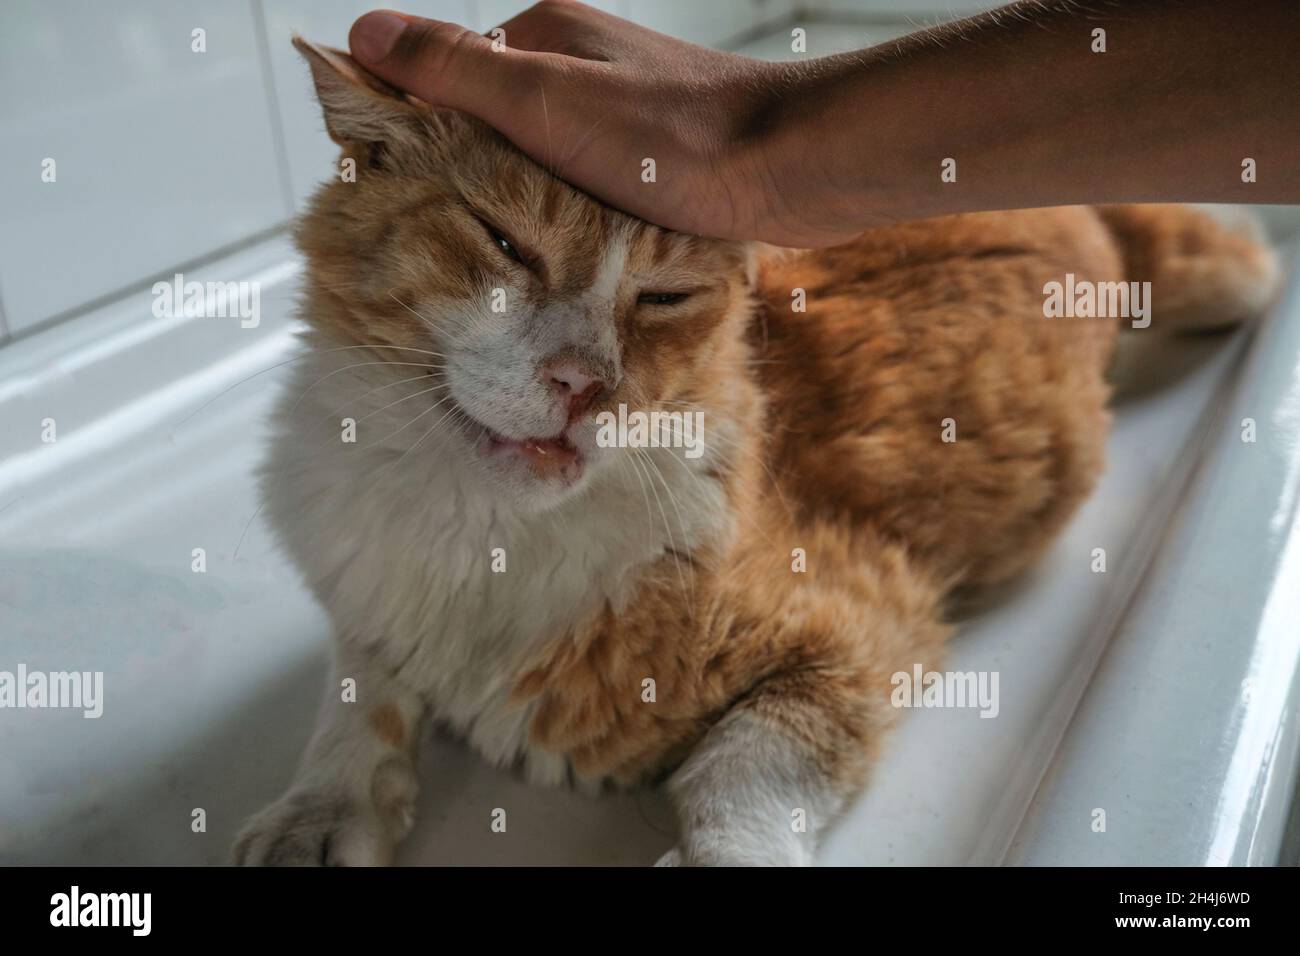 Gros plan de chat au gingembre en forme de mains.Museau de chat heureux.Animaux domestiques en gros plan. Banque D'Images